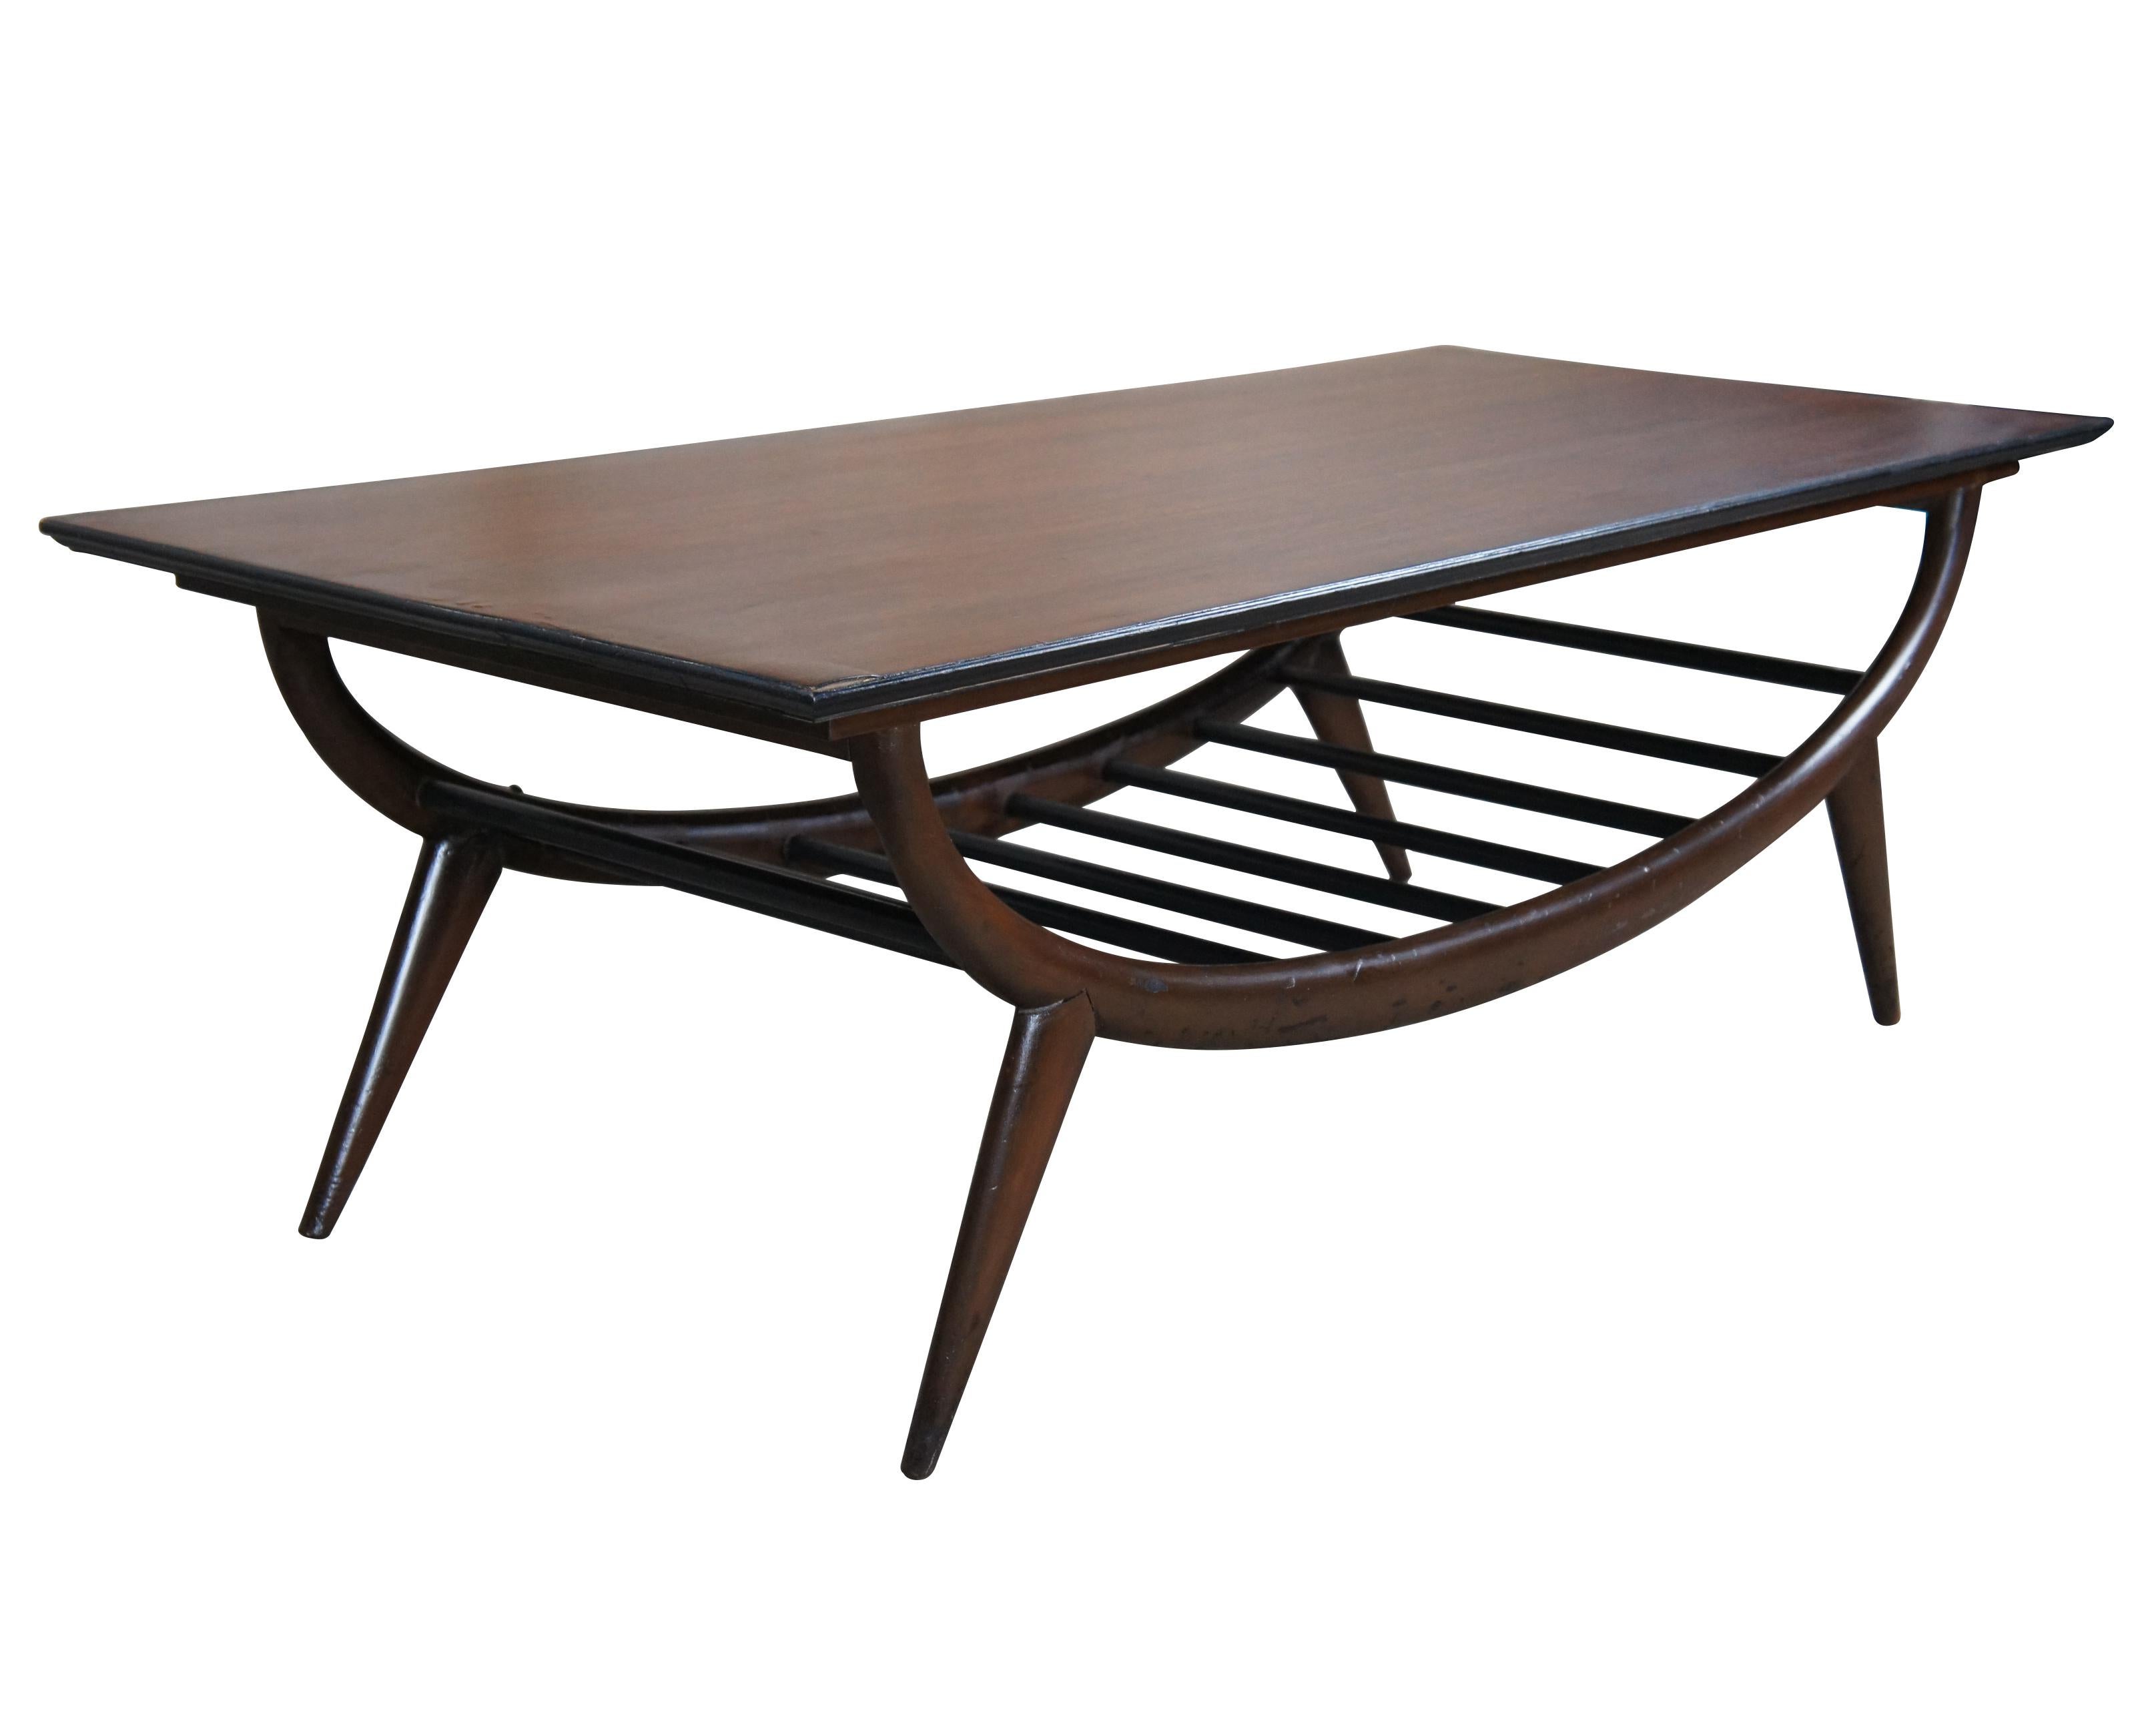 Une table basse impressionnante de style moderne du milieu du siècle.  Ce meuble présente une forme sculpturale en chêne avec une base ouverte à lattes et des pieds fuselés à chevilles.  Marqué sur le dessous 20529.
